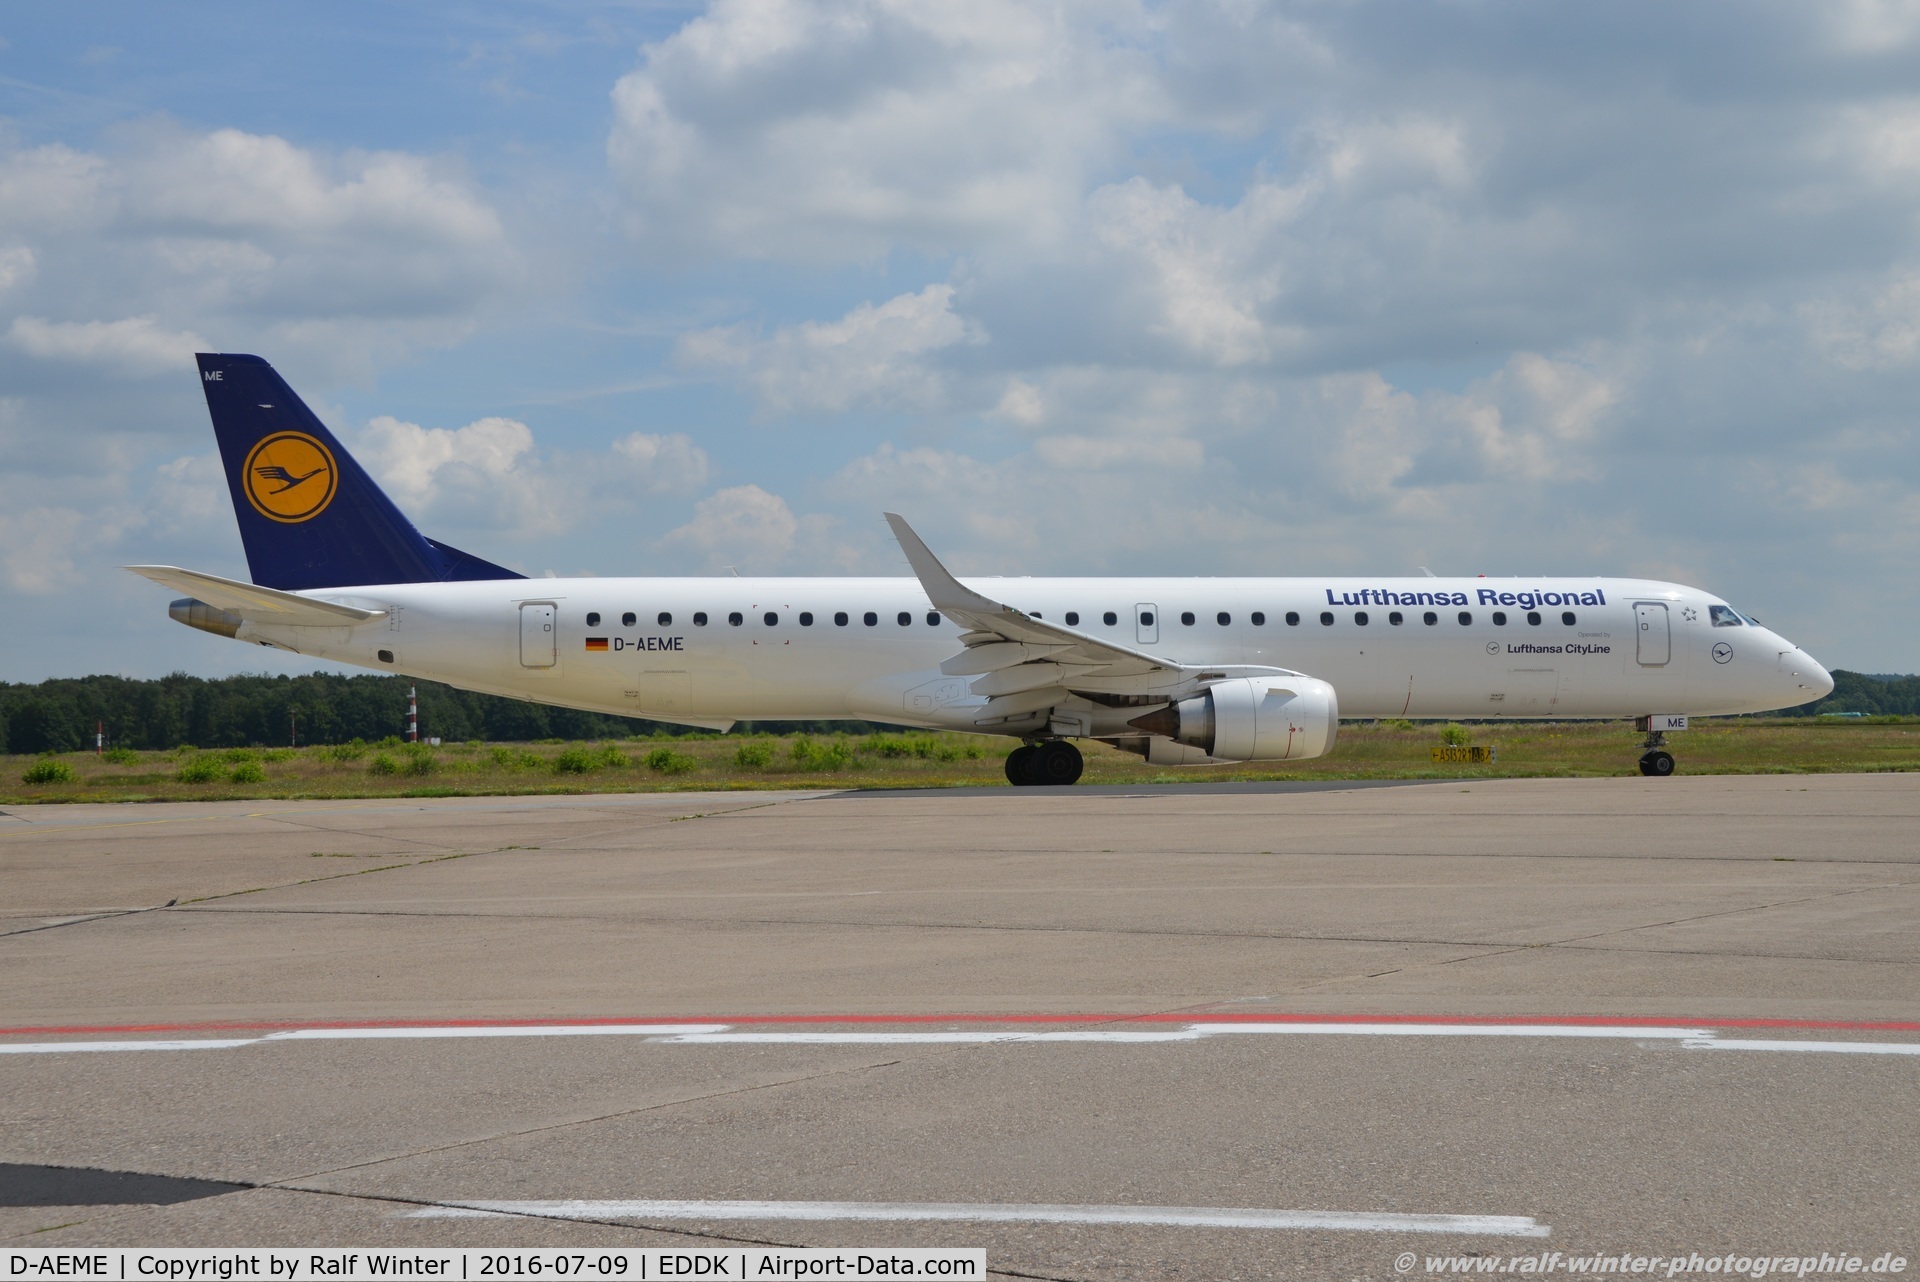 D-AEME, 2009 Embraer 195LR (ERJ-190-200LR) C/N 19000308, Embraer ERJ-195LR 190-200LR - CL CLH Lufthansa Cityline - 19000308 - D-AEME - 09.07.2016 - CGN